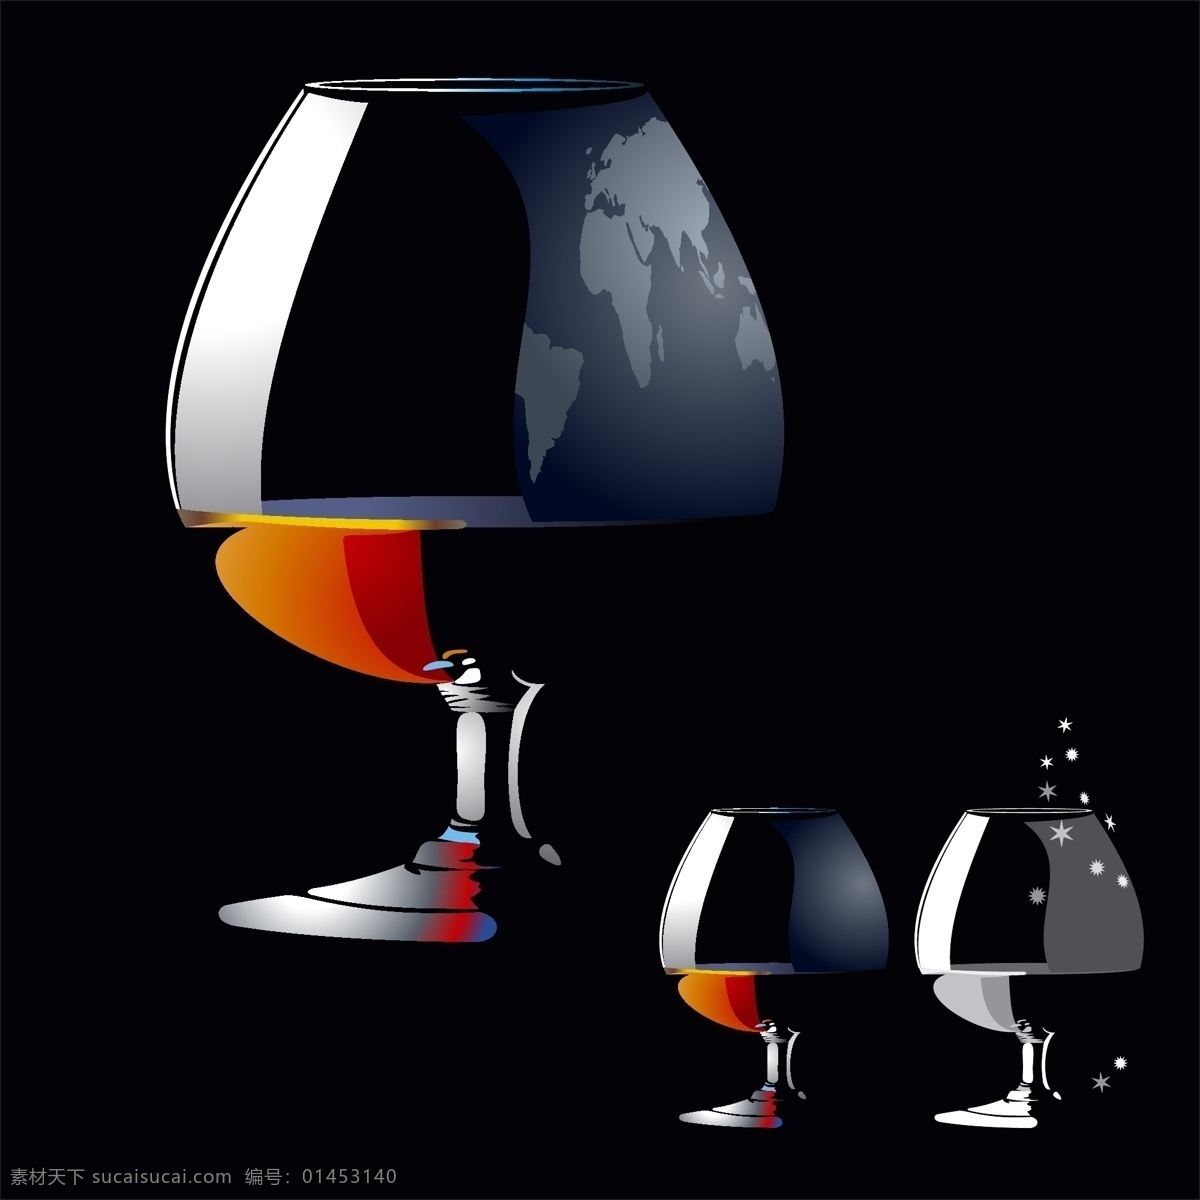 葡萄酒矢量 酒瓶 葡萄酒杯 葡萄酒酒杯 向量 向量的酒品牌 免费 矢量 葡萄酒 标签 集 自由 剪贴 画 酒杯 玻璃 载体 图像 夹 艺术 酒杯的剪贴画 酒的载体 免费的葡萄酒 矢量图 其他矢量图